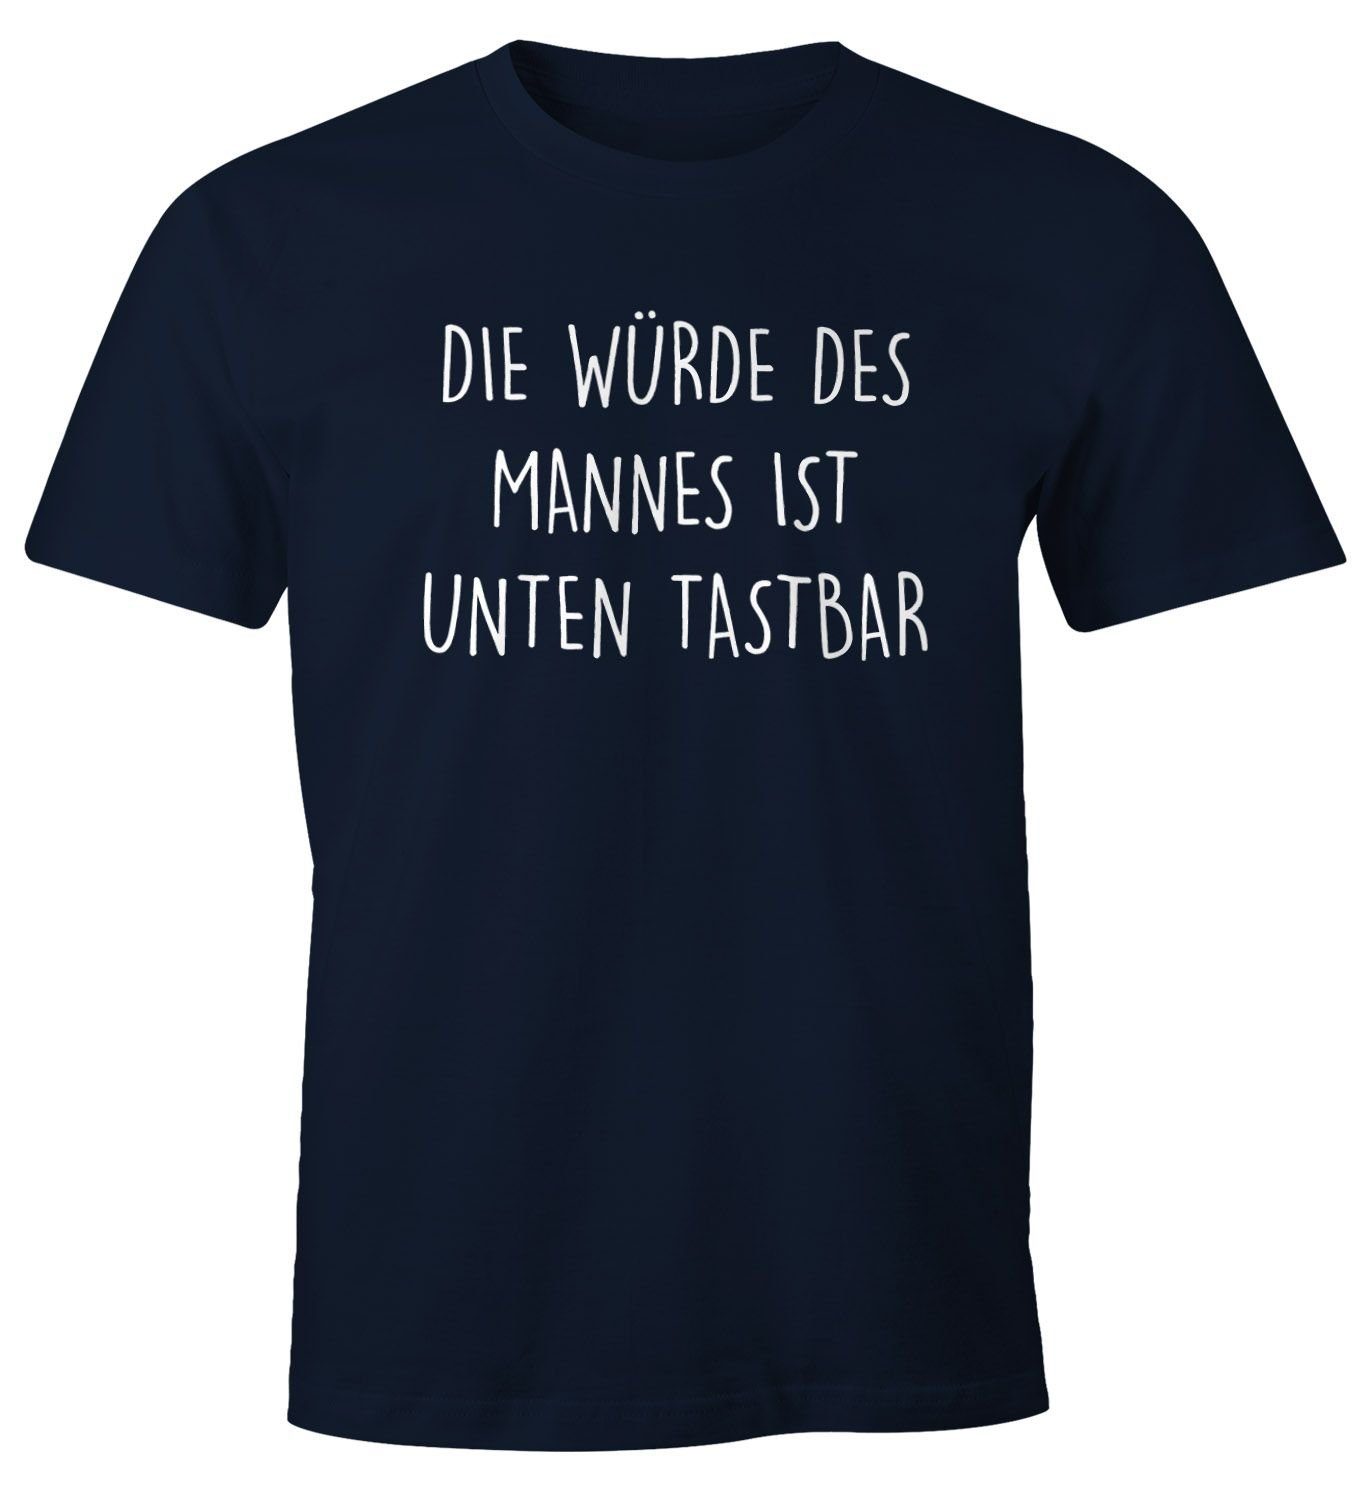 Die MoonWorks ist Spruch mit Herren Print-Shirt Moonworks® Mannes T-Shirt mit tastbar Fun-Shirt navy Würde Print des Lustiges unten